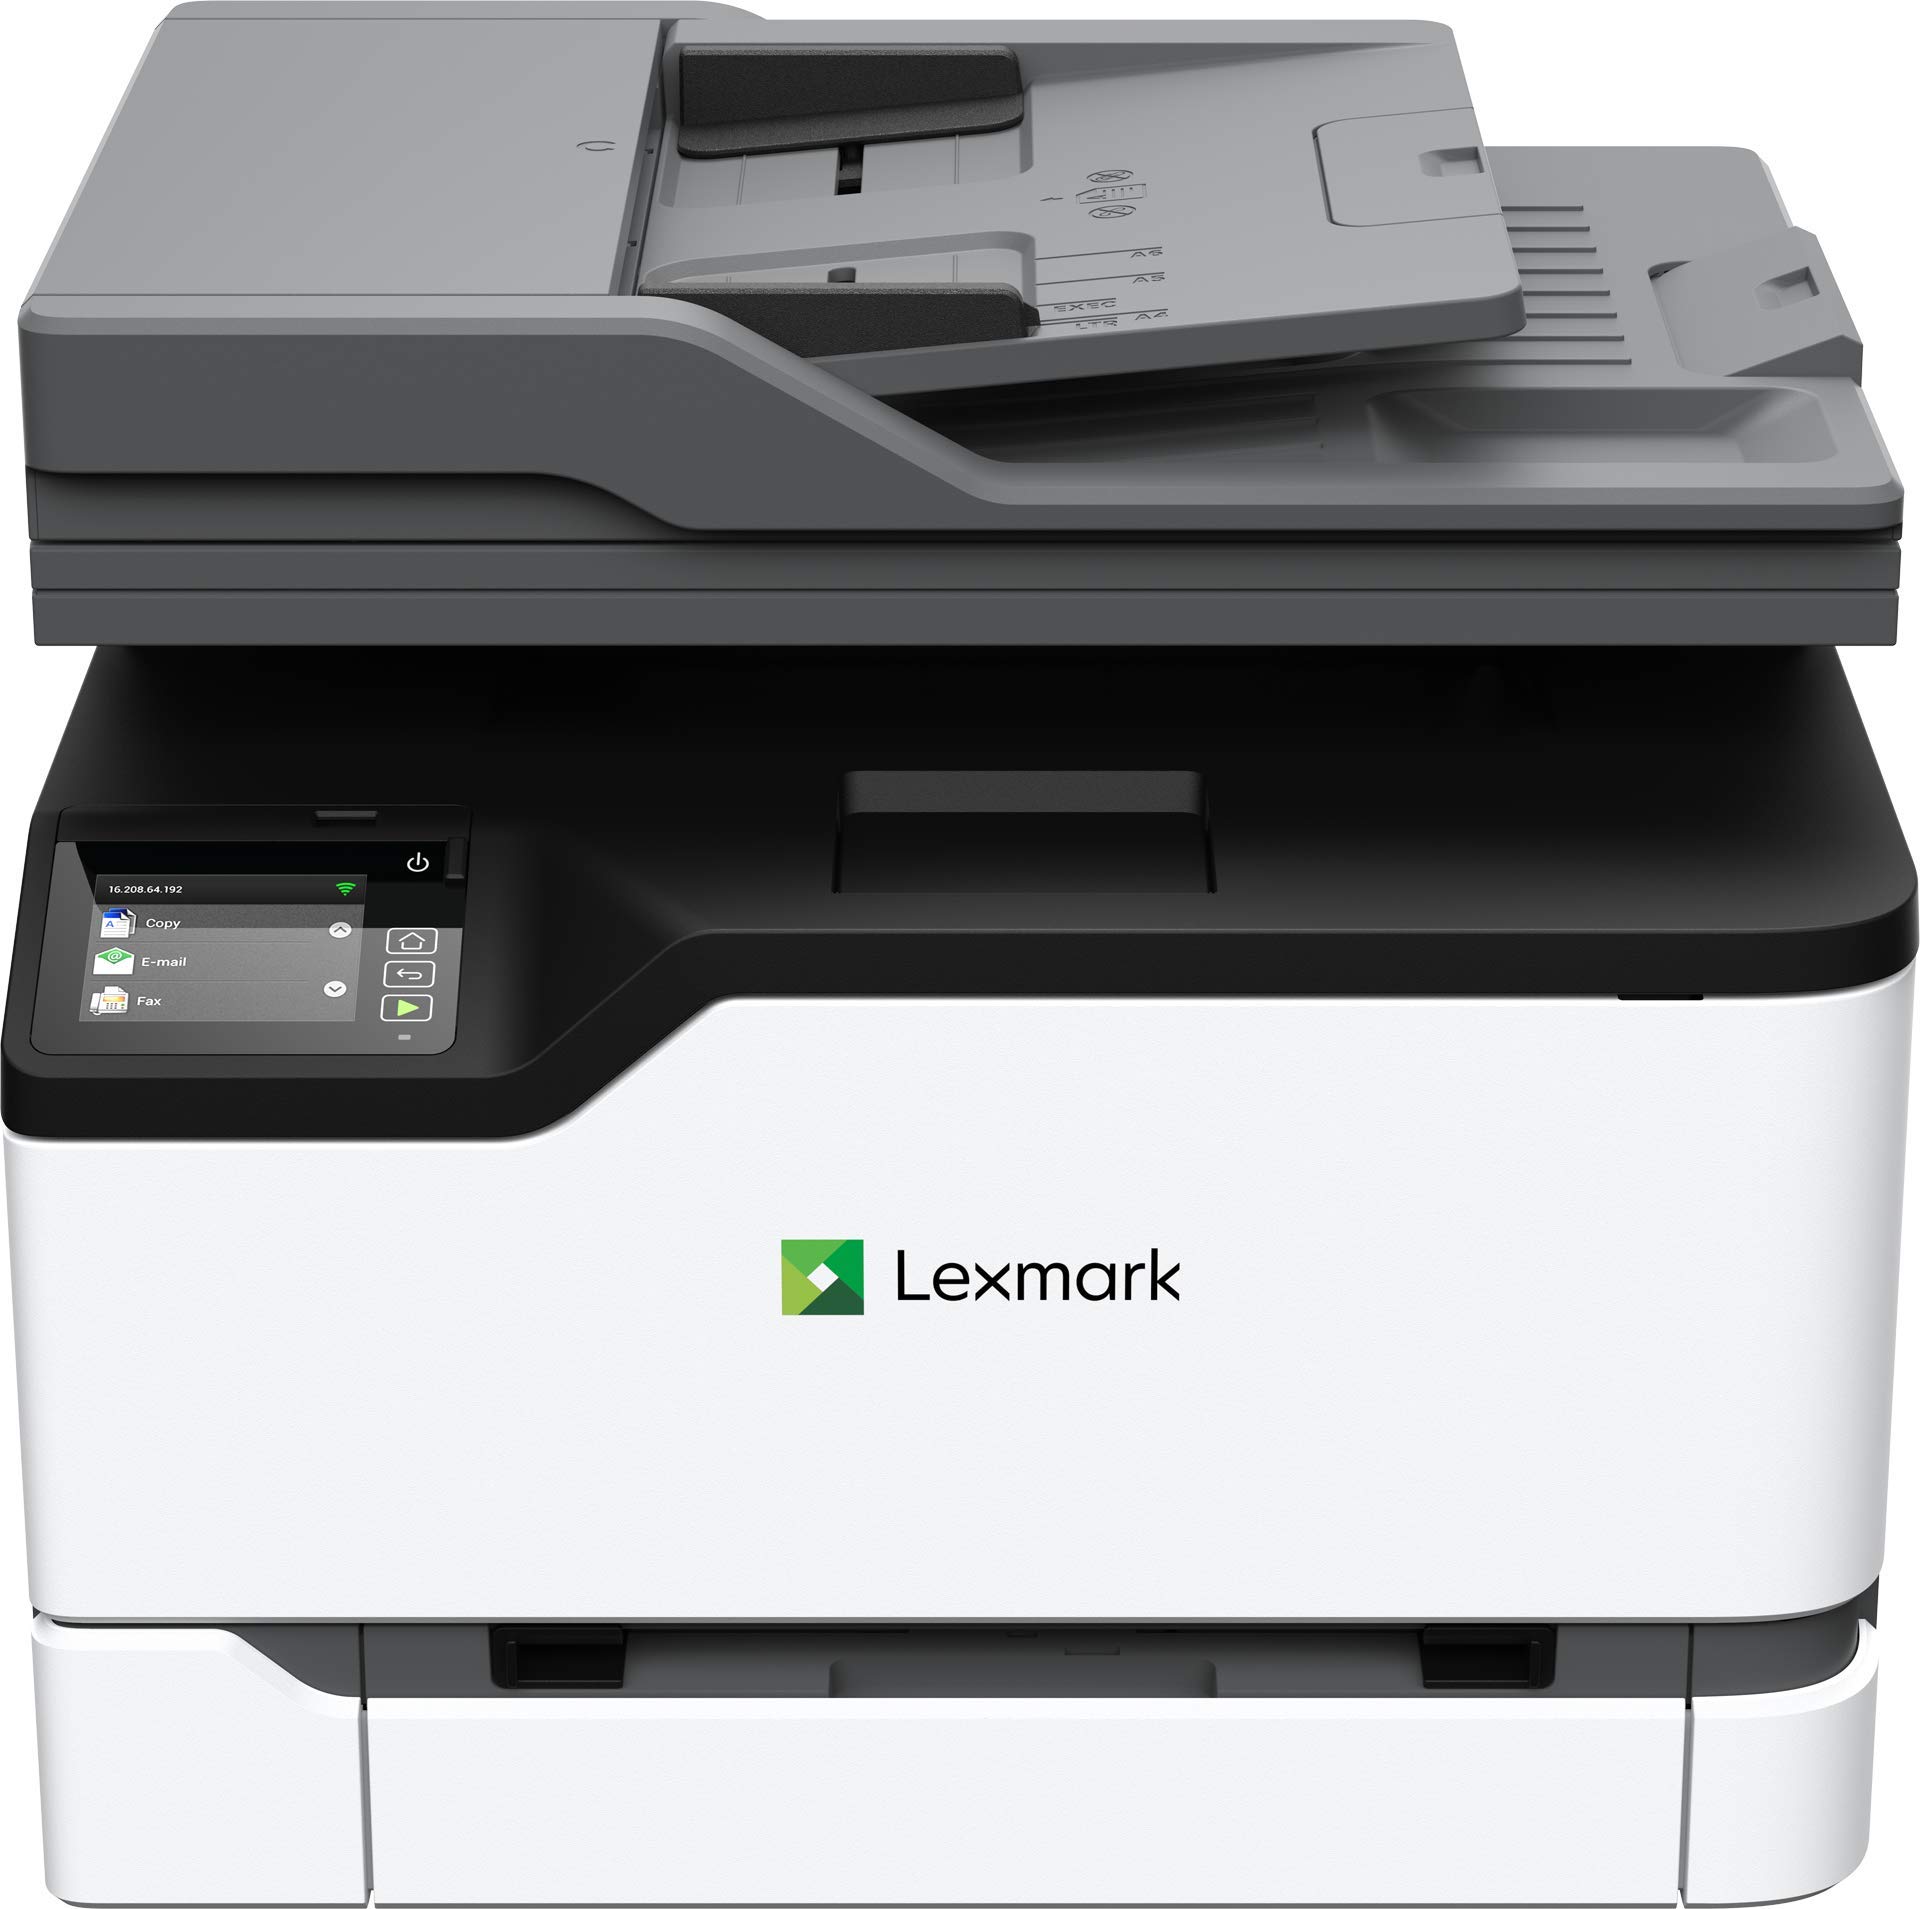 Lexmark MC3326i 彩色多功能激光打印机具有打印、复印、扫描和无线功能，双面打印具有全方位安全性，...